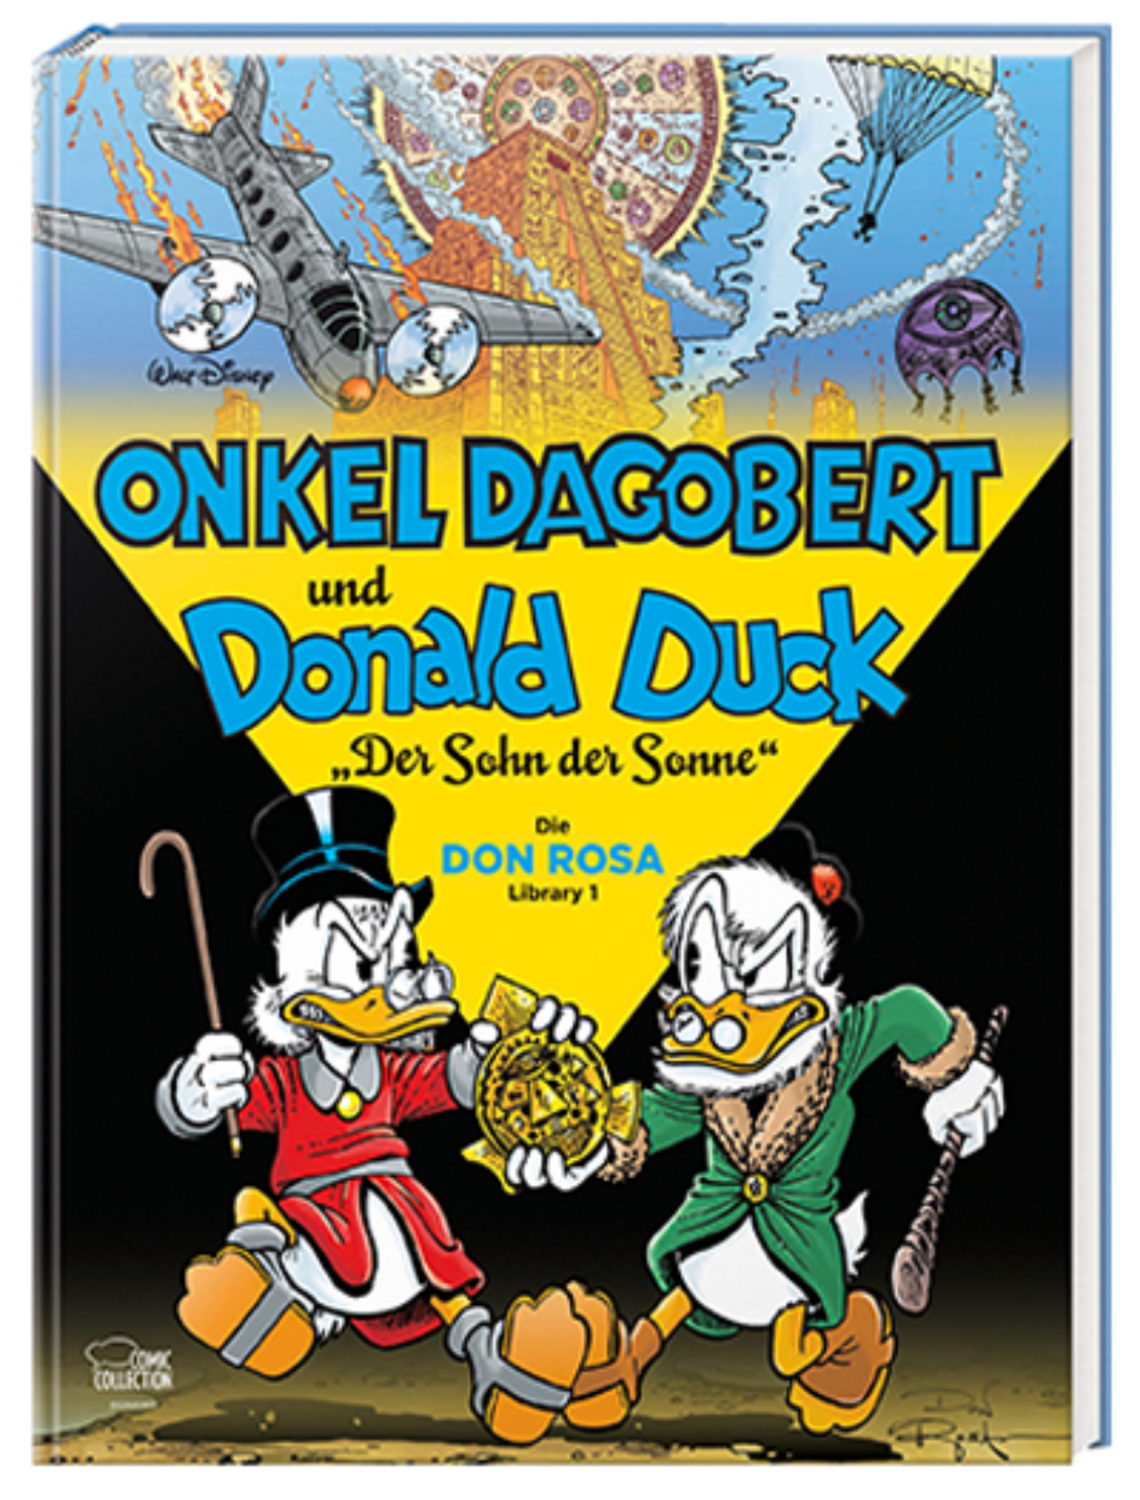 ONKEL DAGOBERT und DONALD DUCK - Die Don Rosa Library Nr. 1